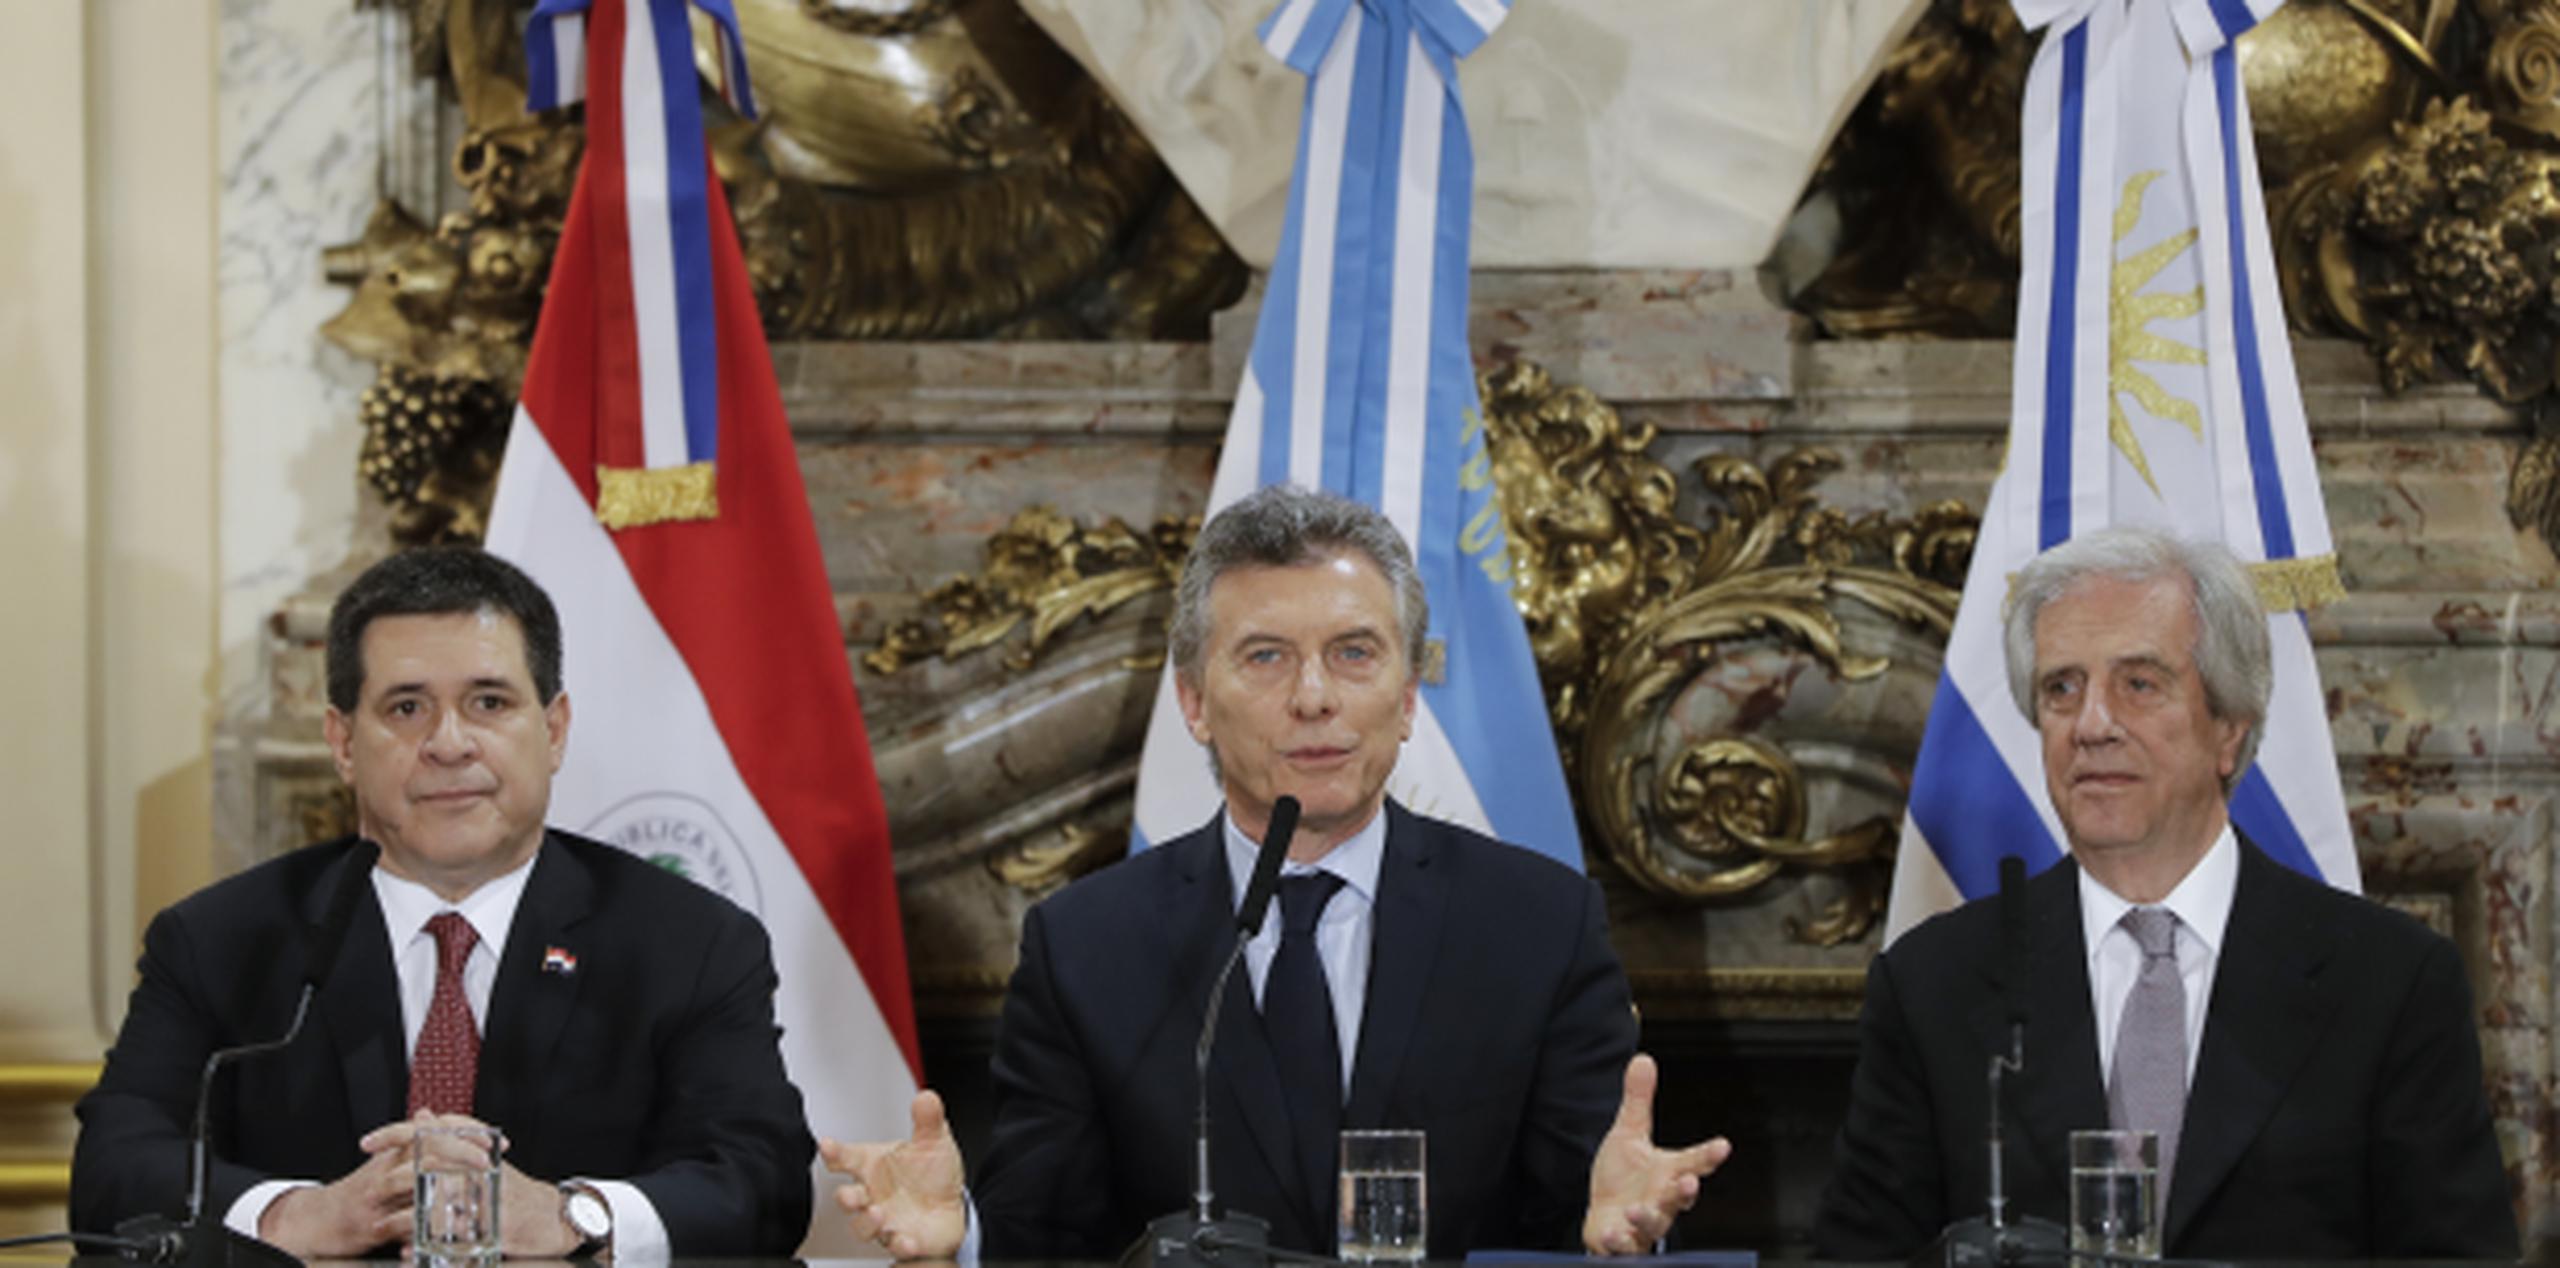 Los presidentes de Paraguay, Argentina y Uruguay, Horacio Cartes, Mauricio Macri y Tabaré Vázquez, hicieron juntos el anuncio de la candidatura conjunta de los tres países para el Mundial 2030. (AP/Natacha Pisarenko)